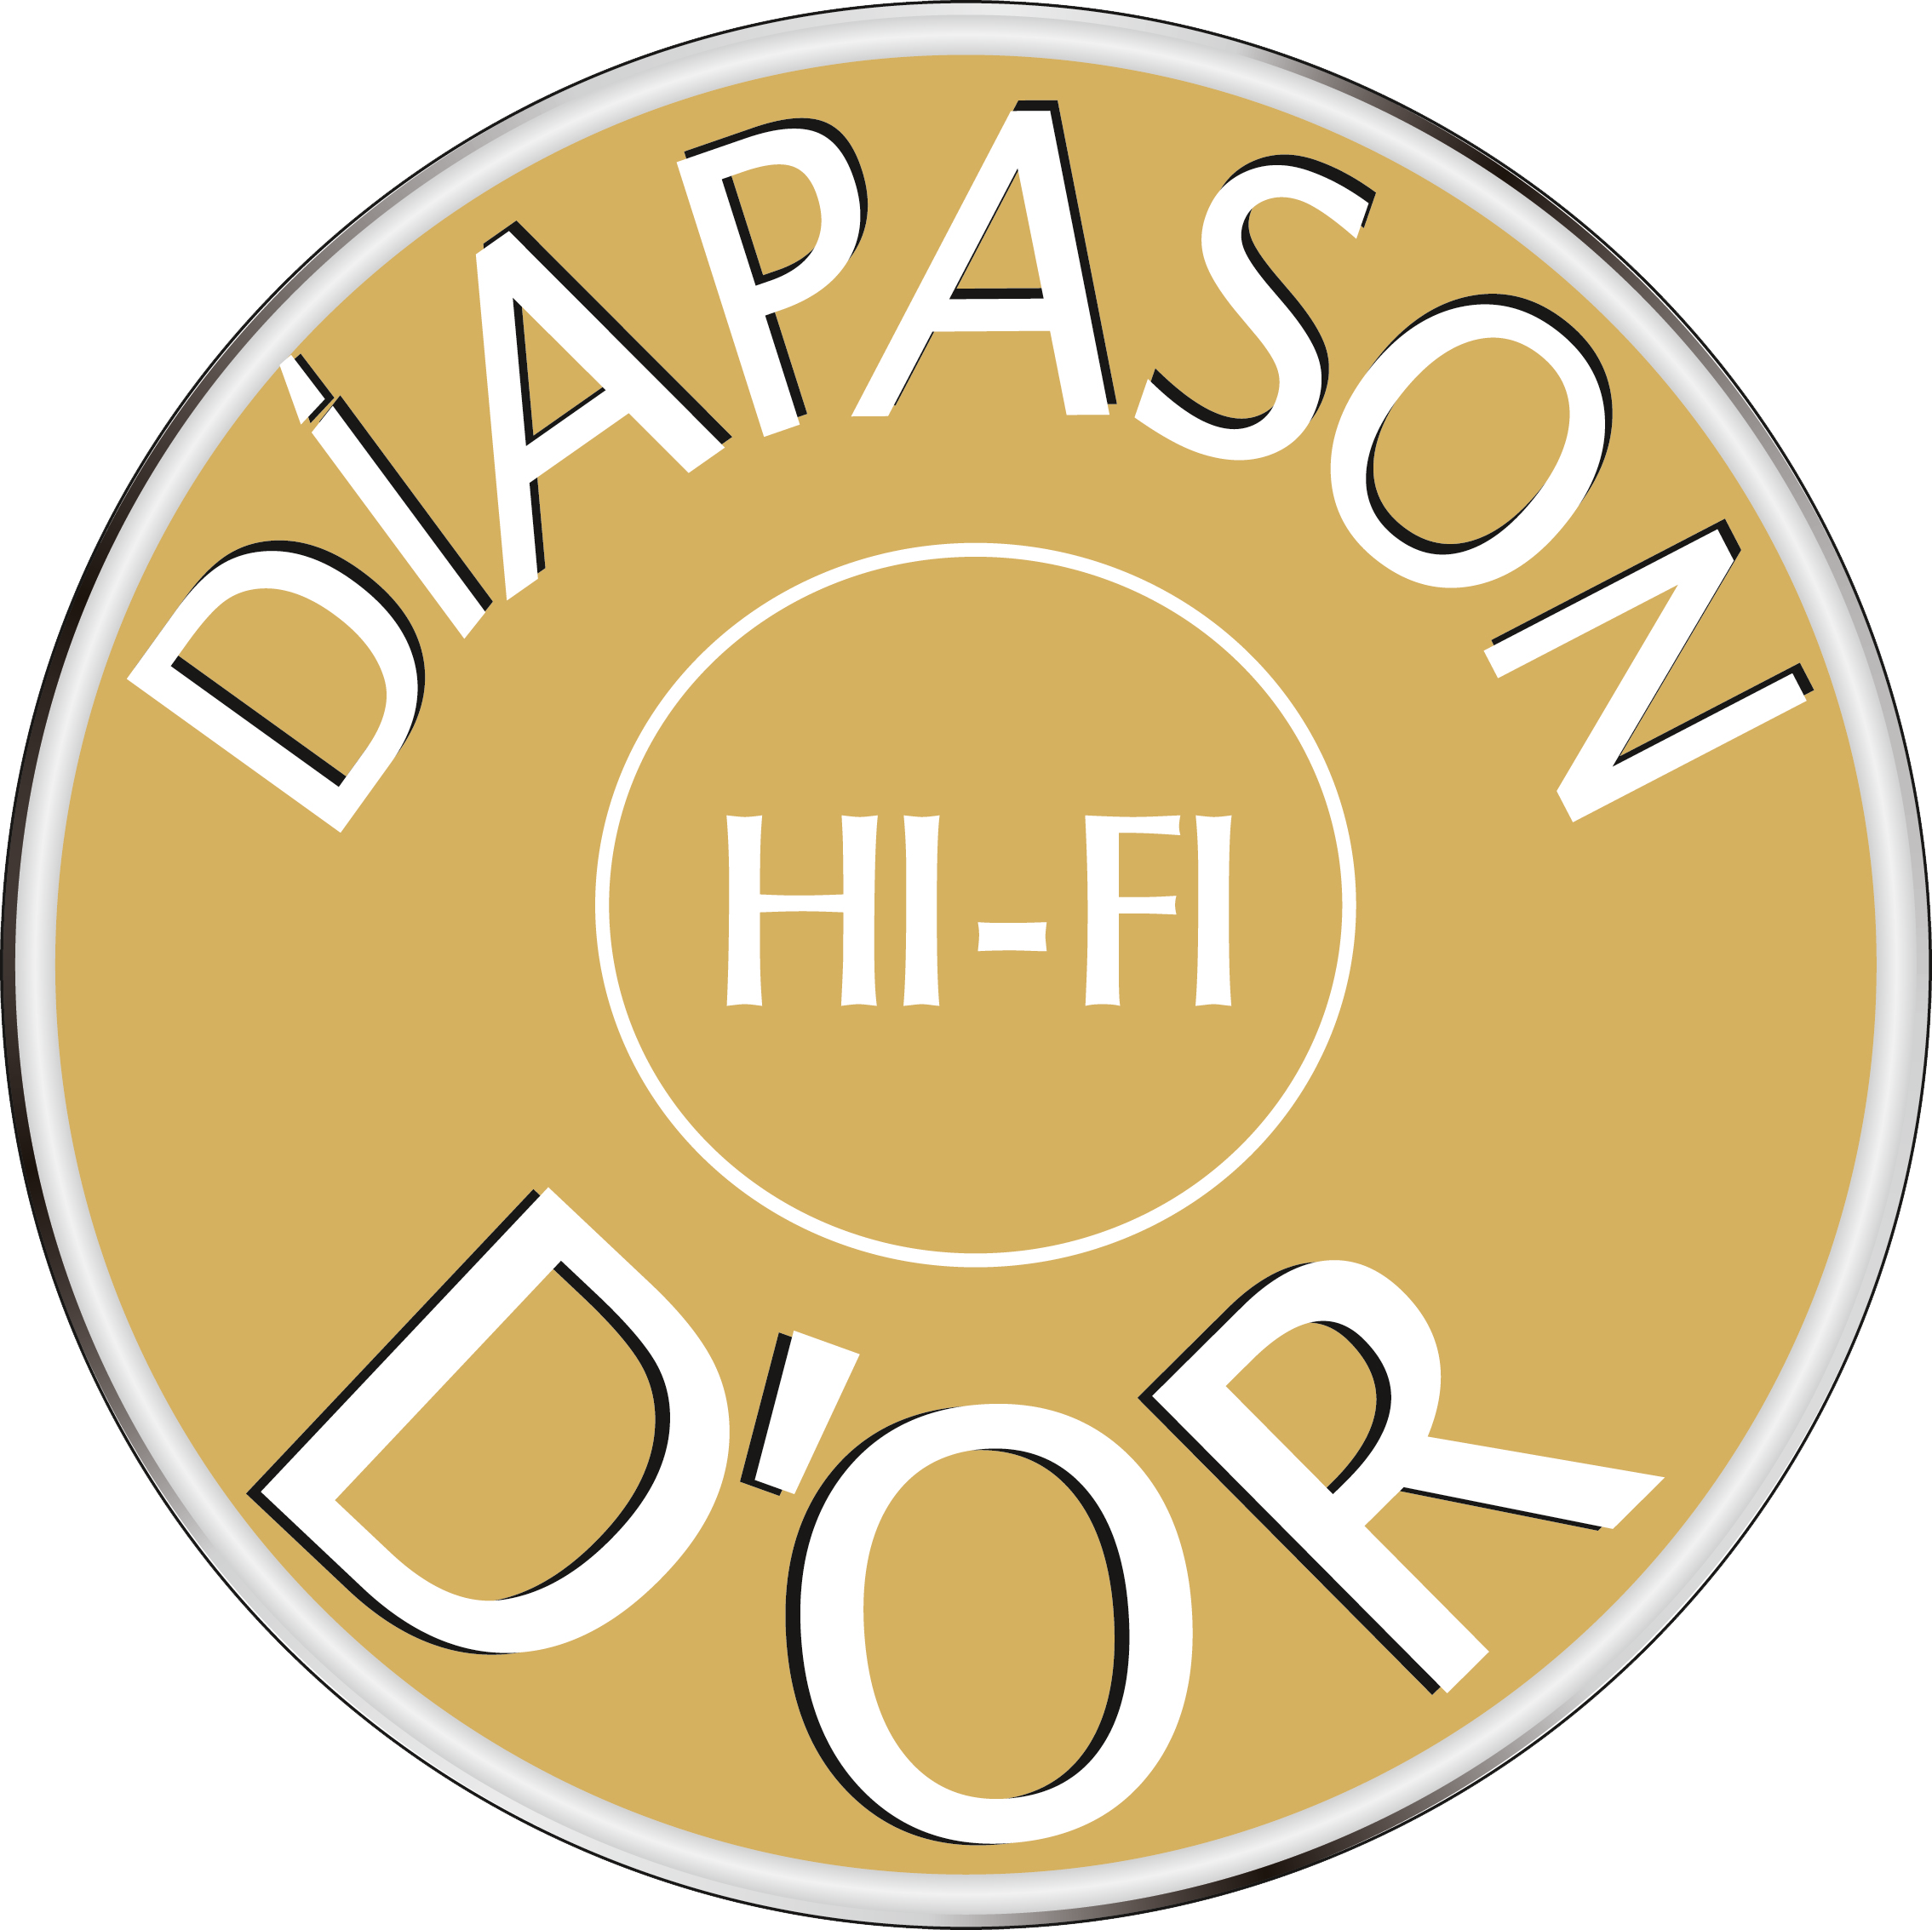 Diapason d'Or award for Corinium